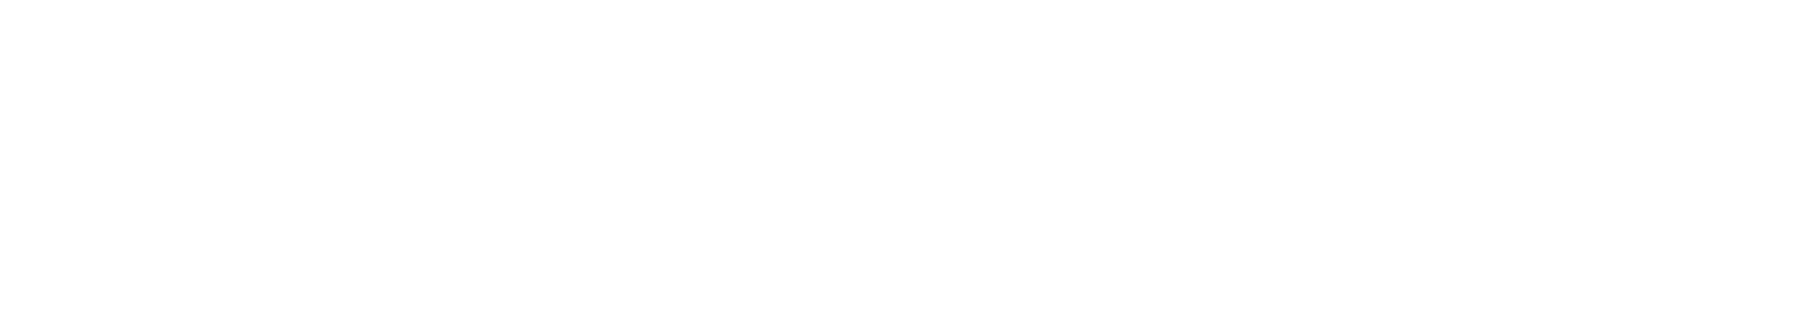 L'Oréal logo grand pour les fonds sombres (PNG transparent)